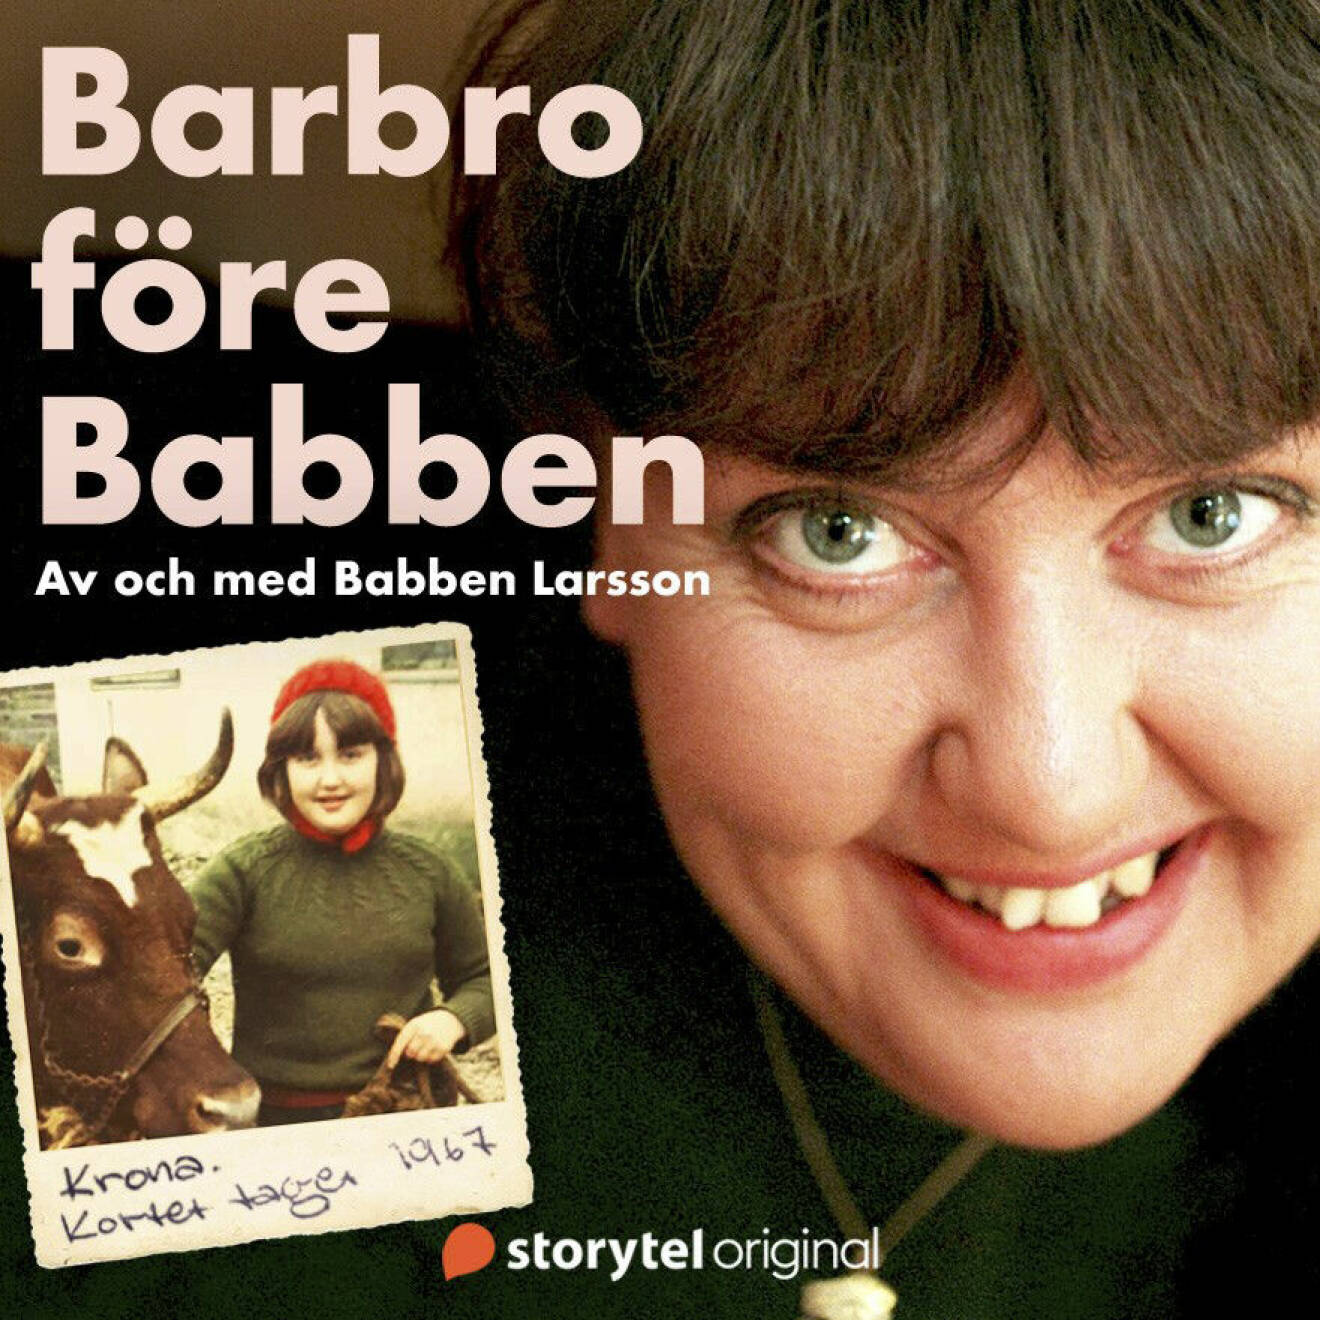 Bokomslag till ljudboken Barbro före Babben av Babben Larsson.